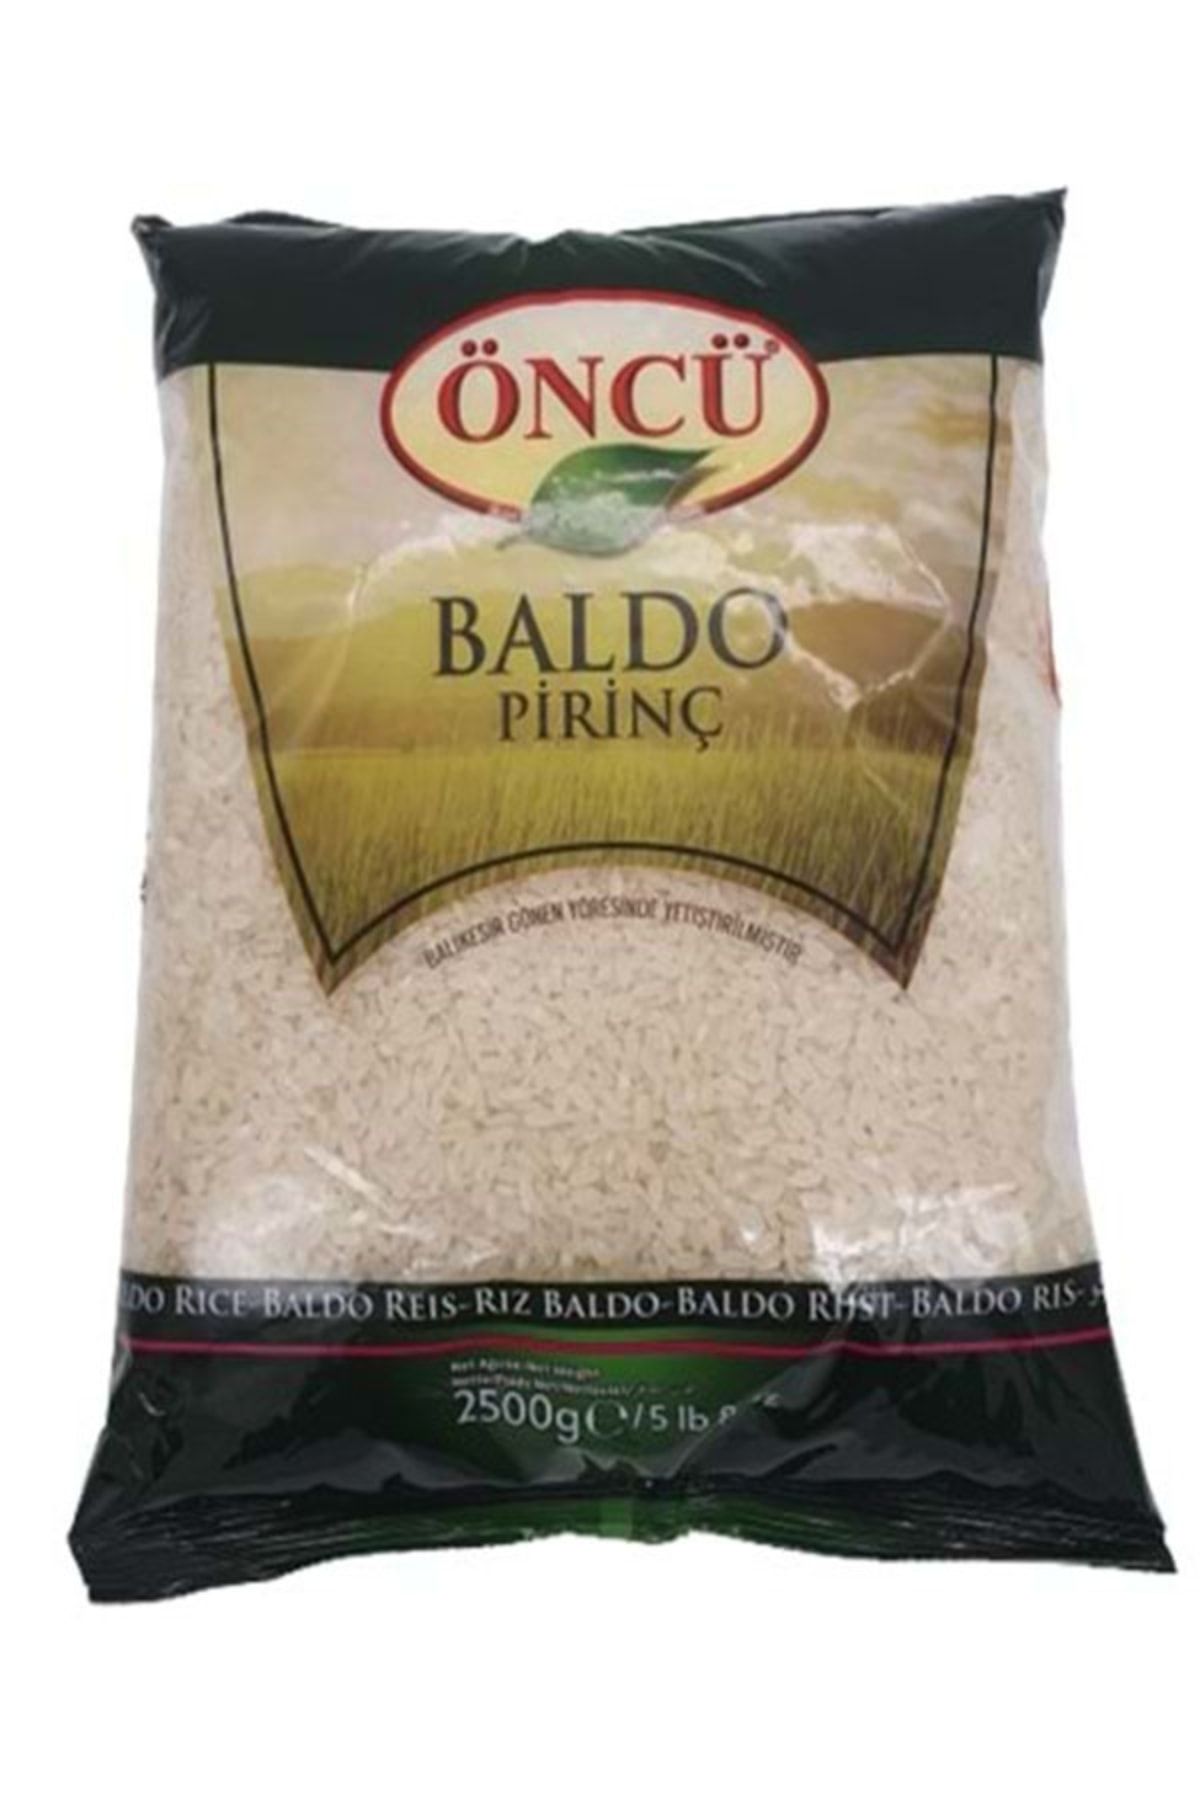 Öncü Baldo Pirinç 2500 g